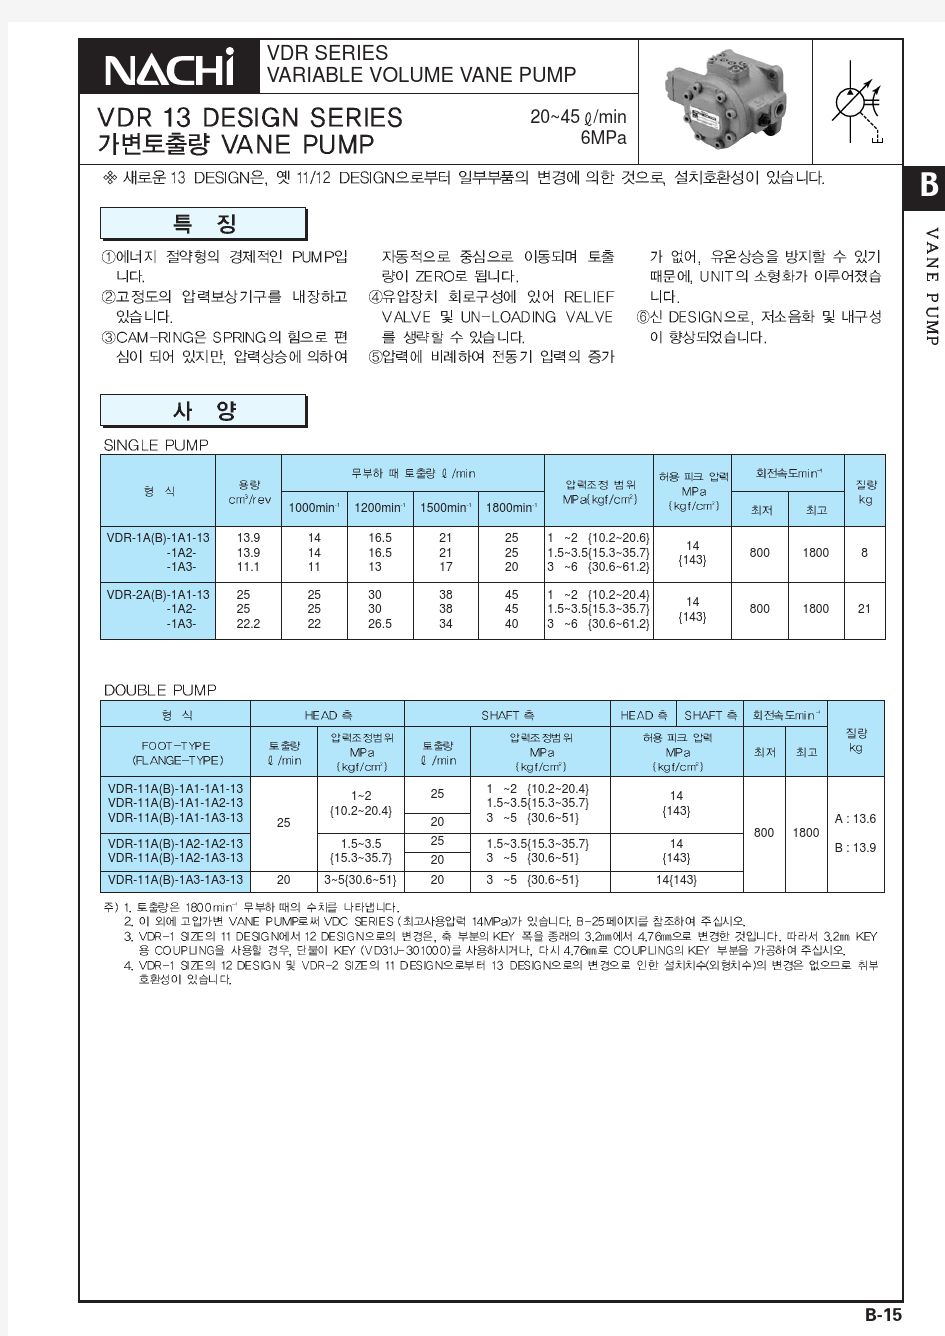 日本NACHI 变量叶片泵